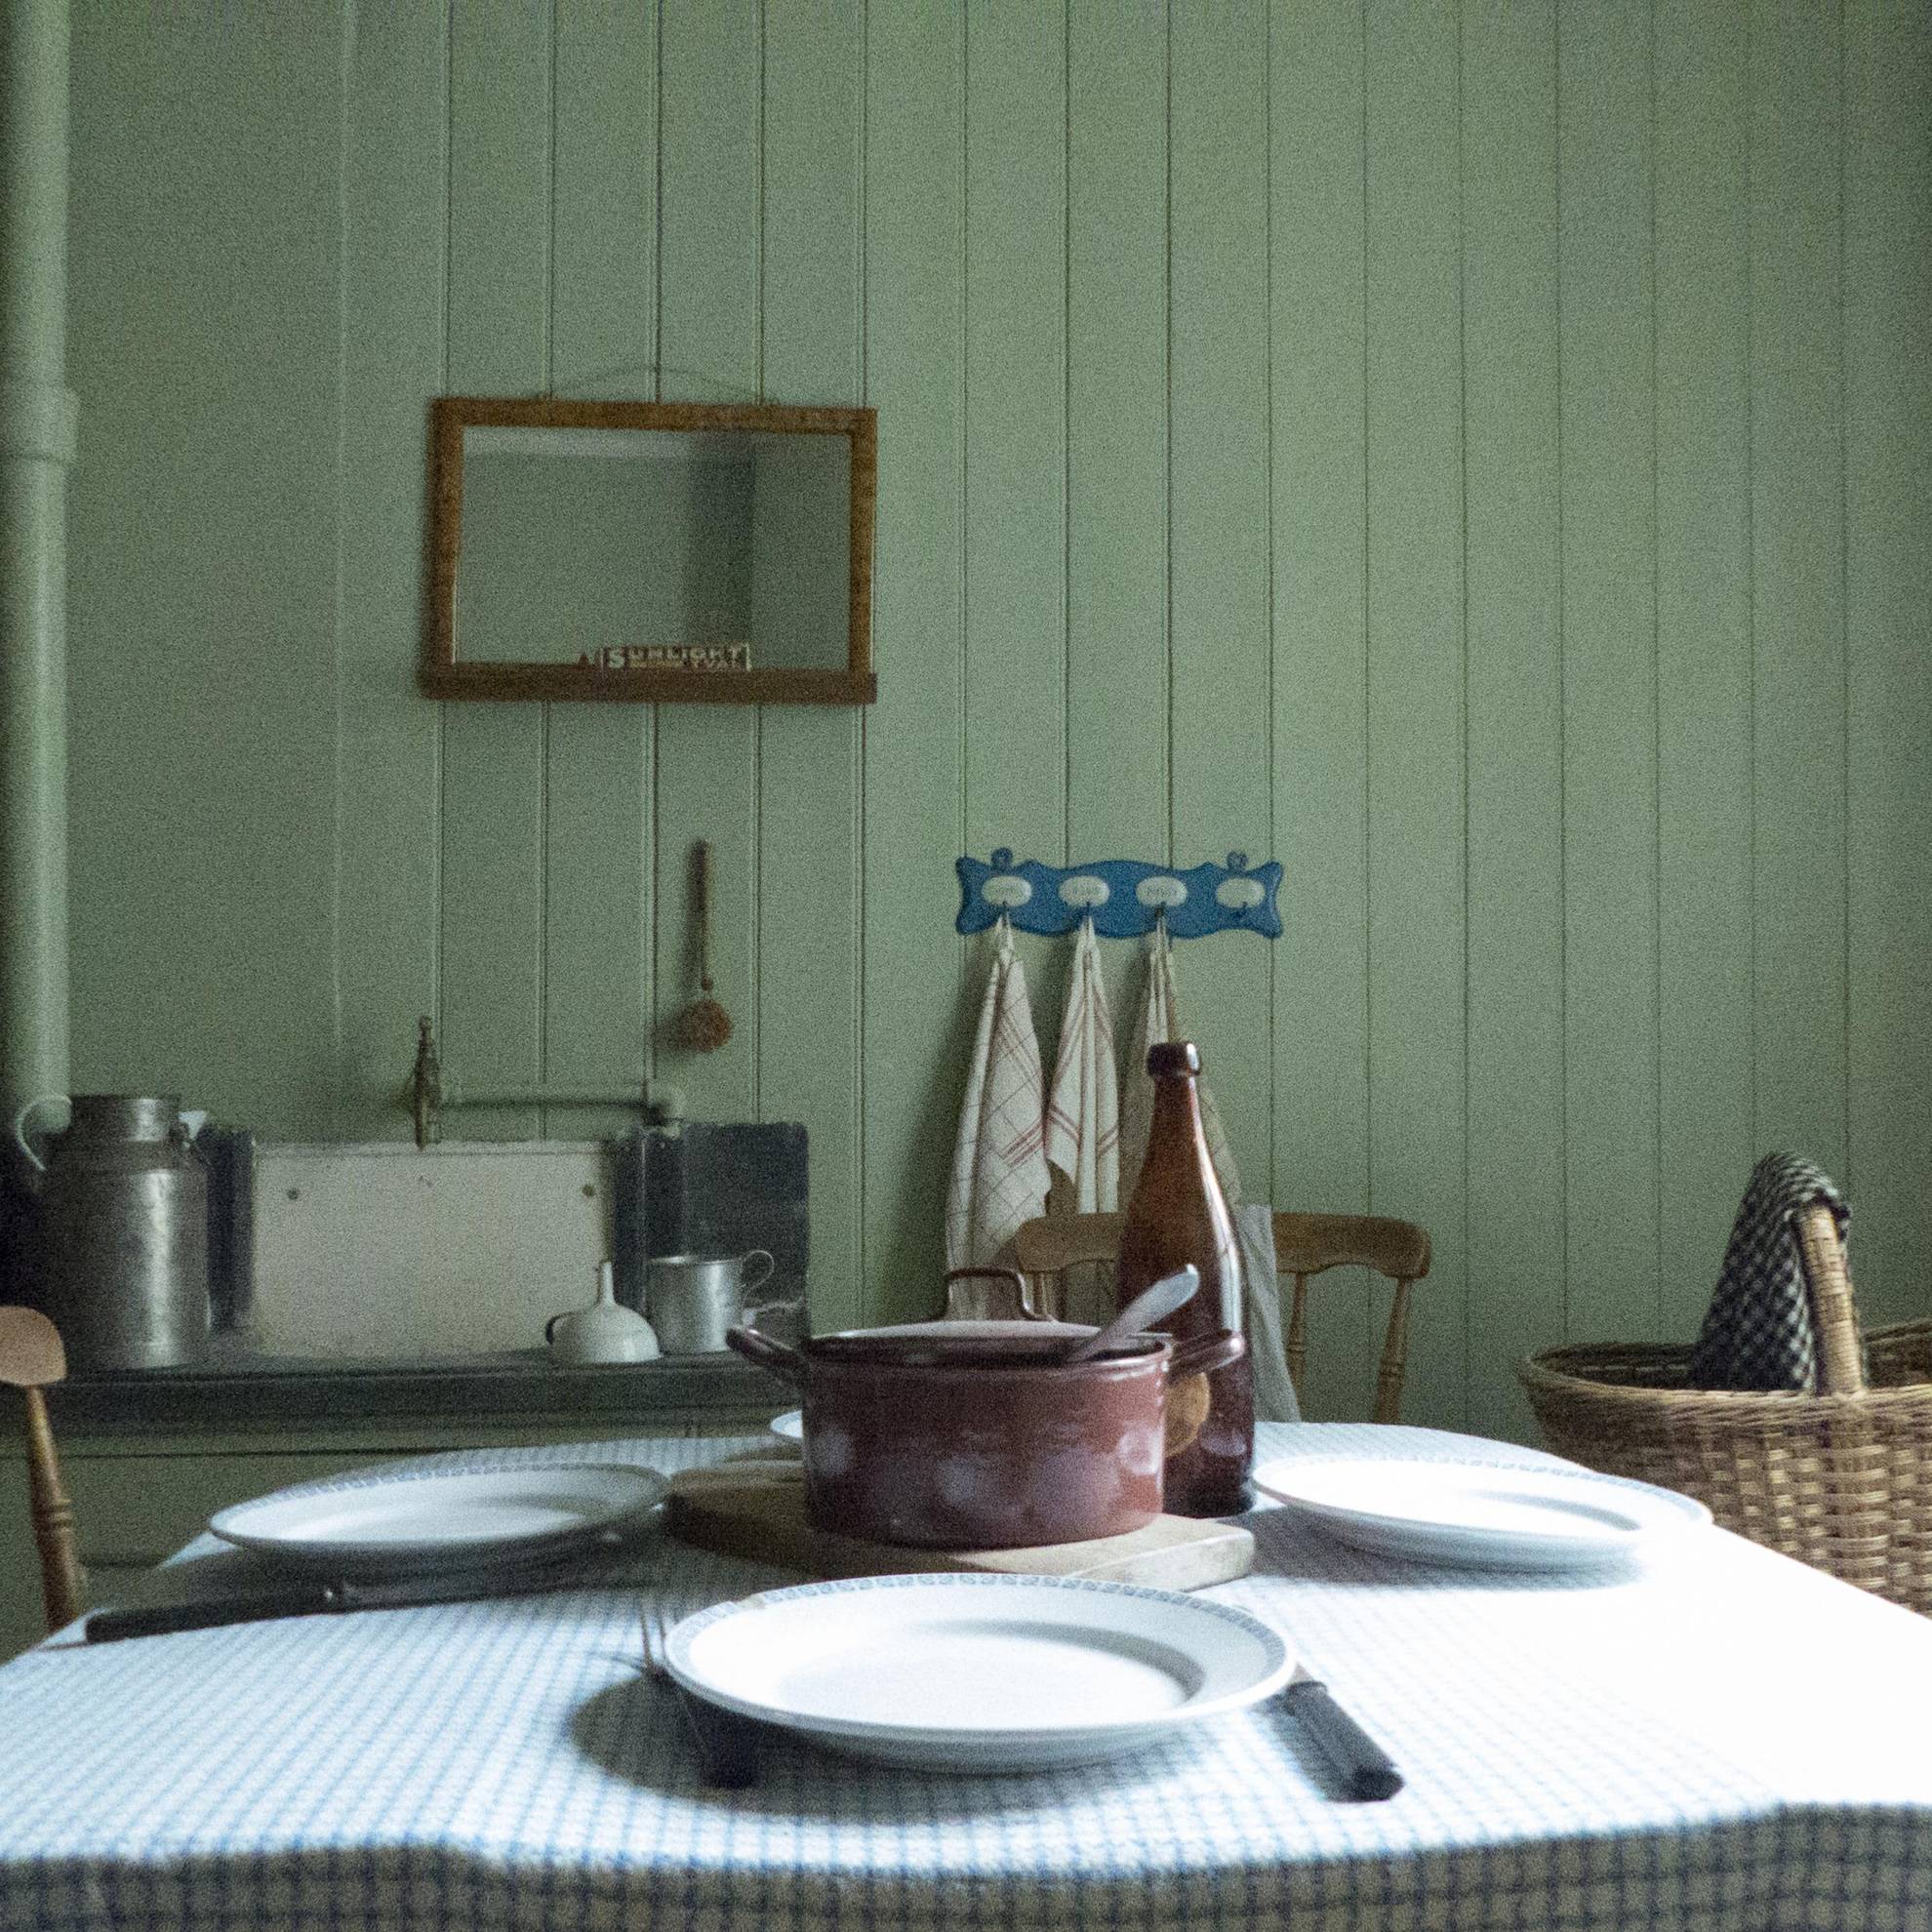 In einem Arbeiterheim im ersten Vorort von Göteborg im 19. und 20. Jahrhundert. Ein gedeckter Tisch mit einem Eisentopf in der Mitte. An einer grünen Holzwand hängt ein Spiegel.